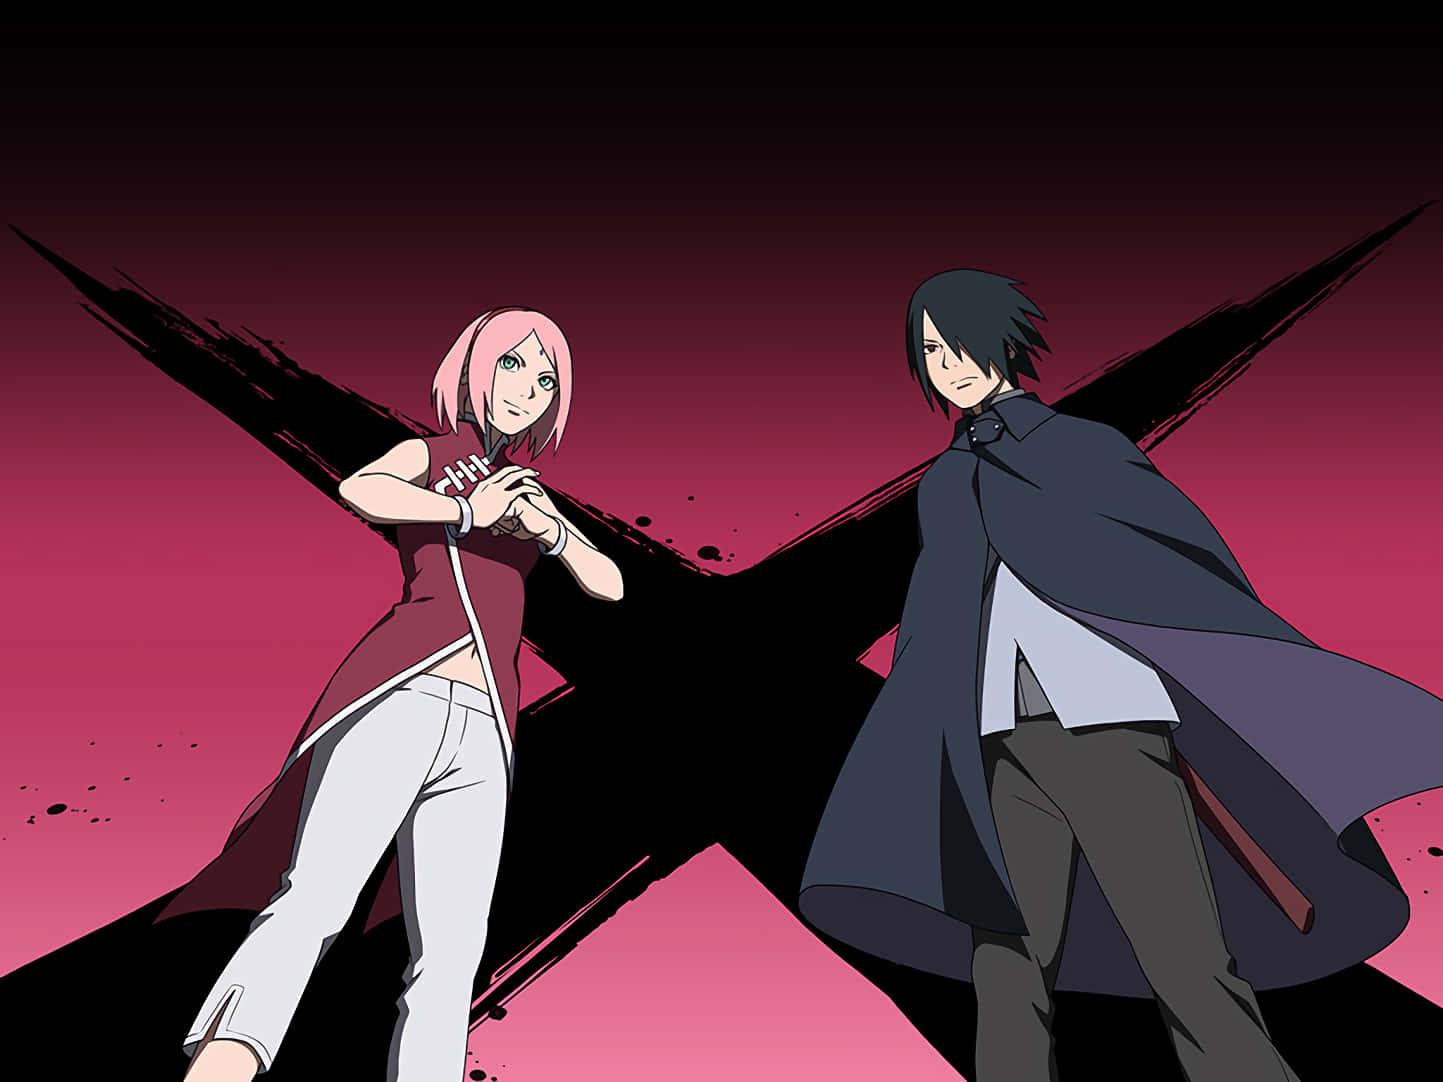 “Sasuke og Sakura - To styrker af Ninja-verdenen